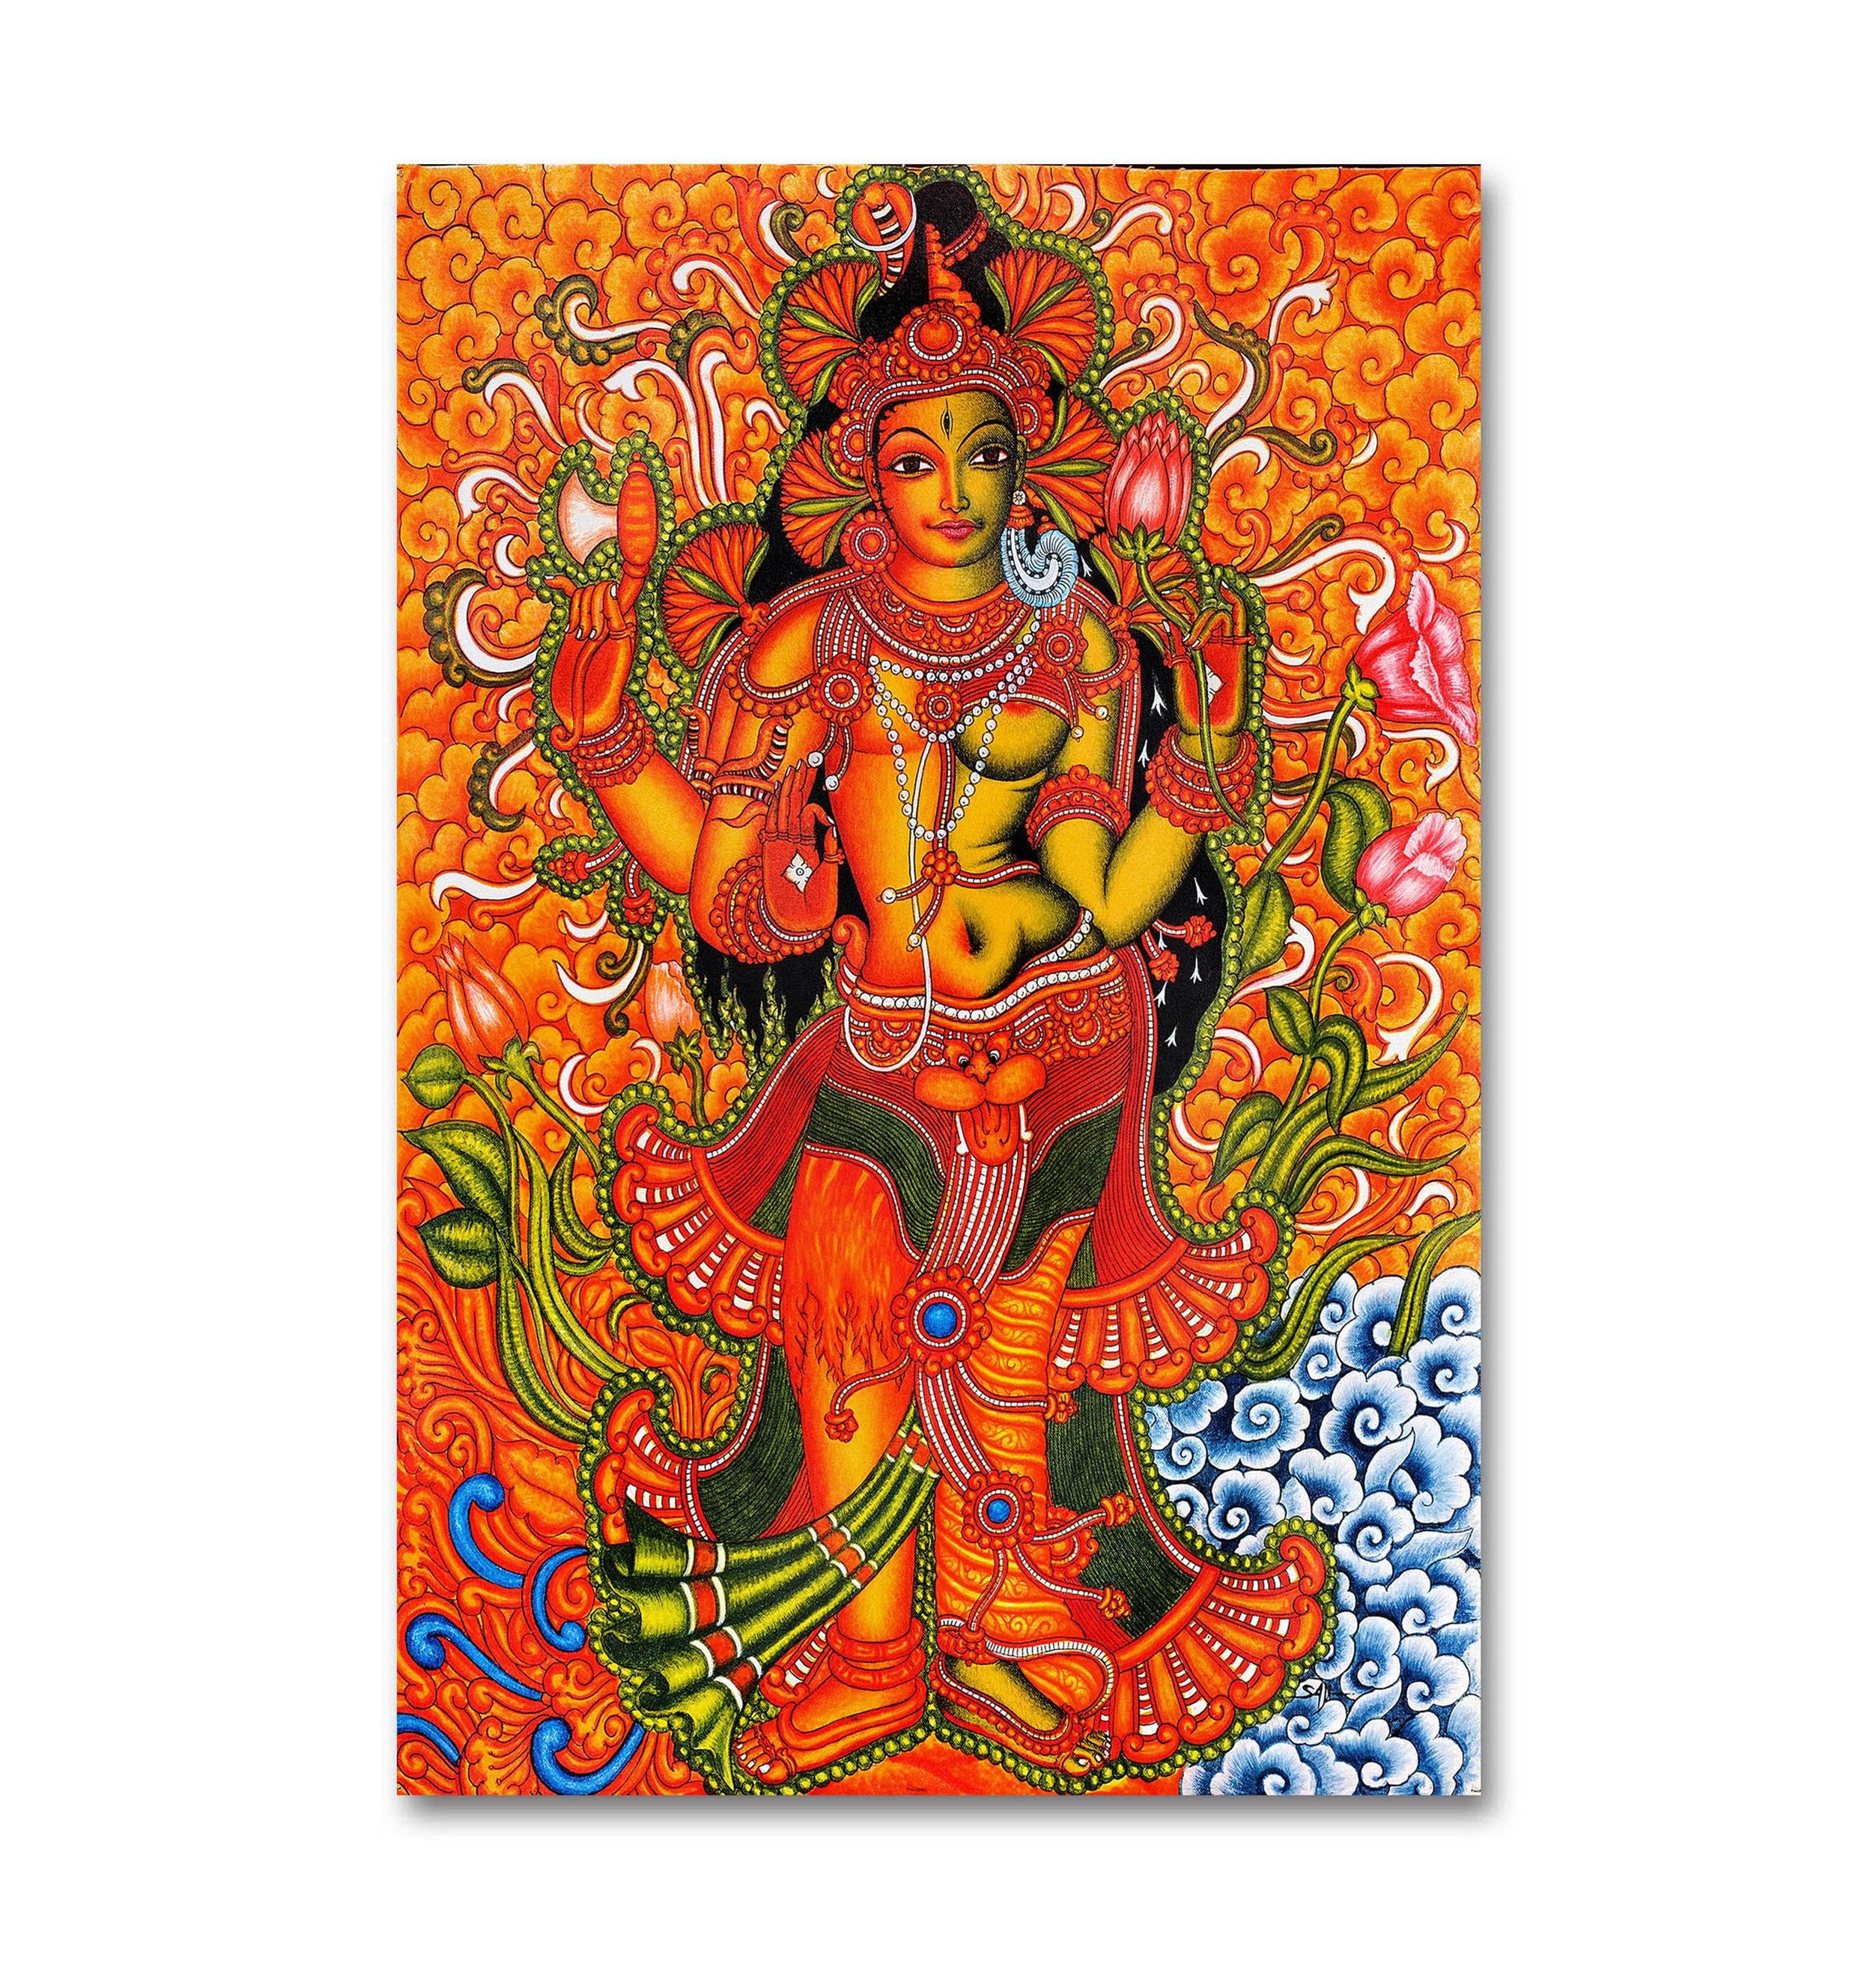 ArdhNarishvara Shiva